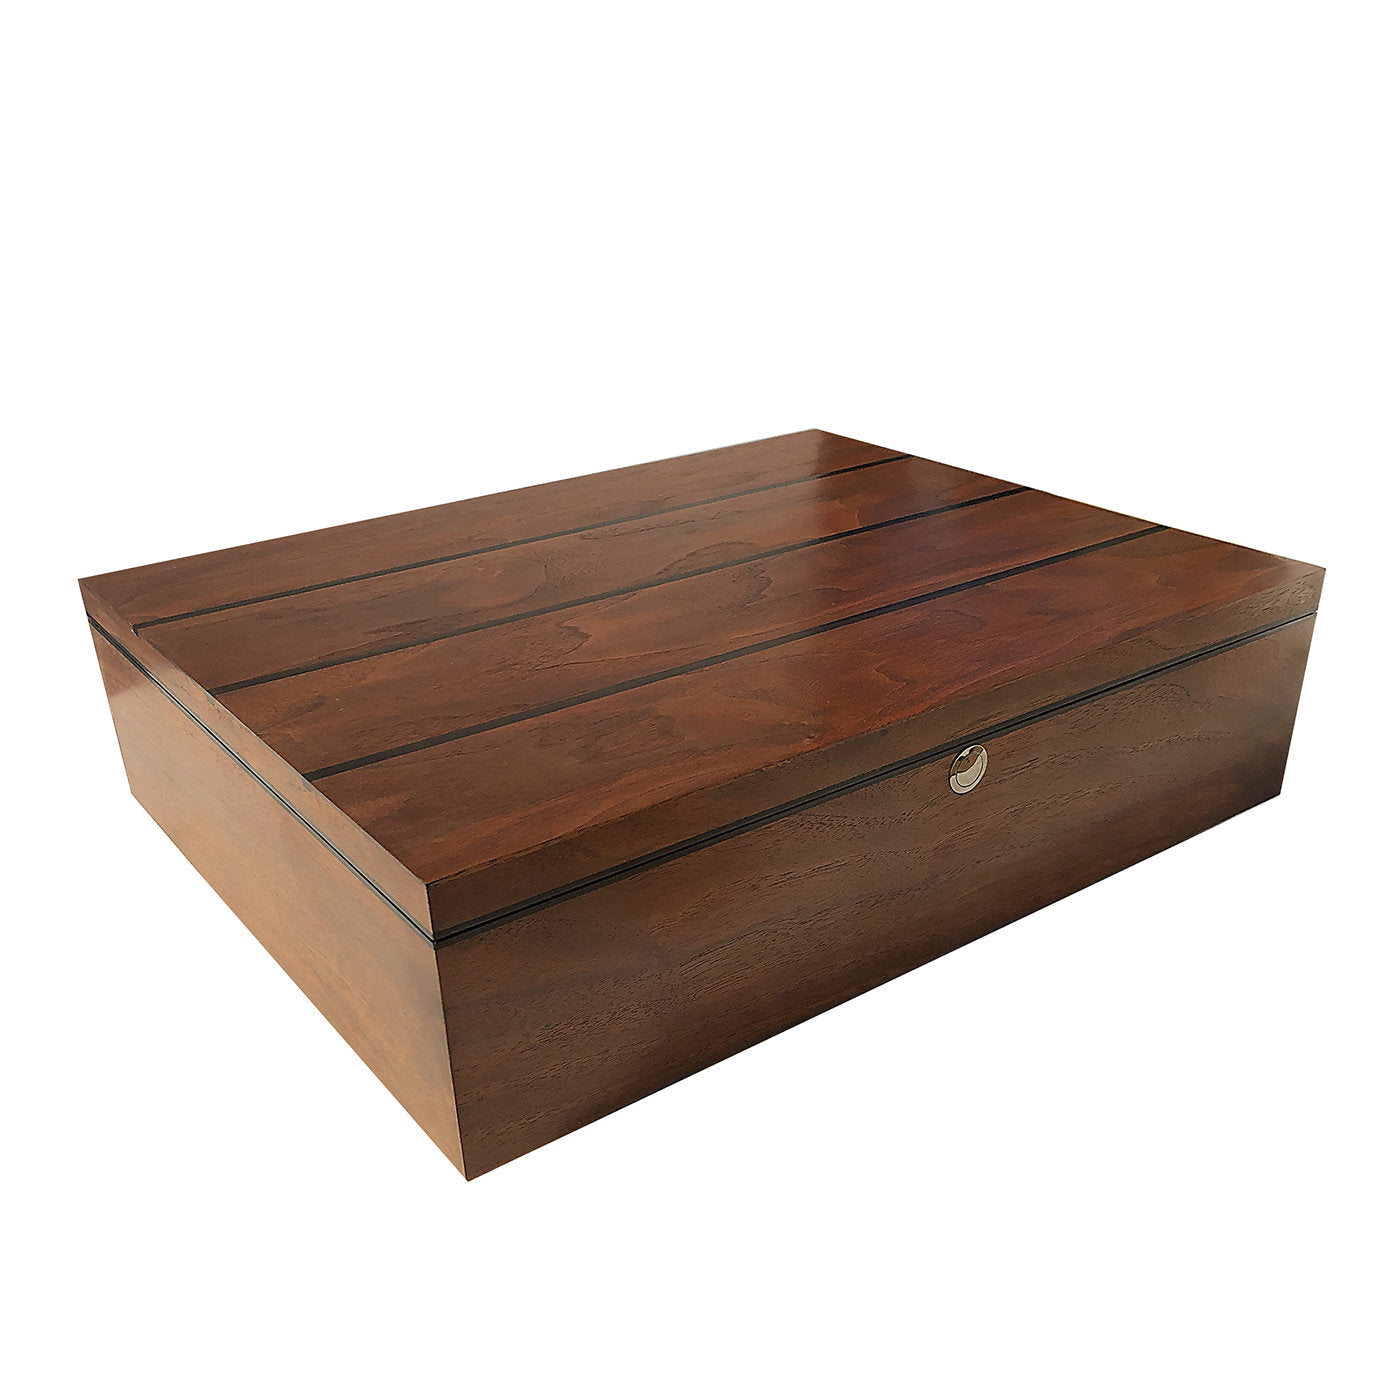 Walnut Wood Box - Alternative view 1